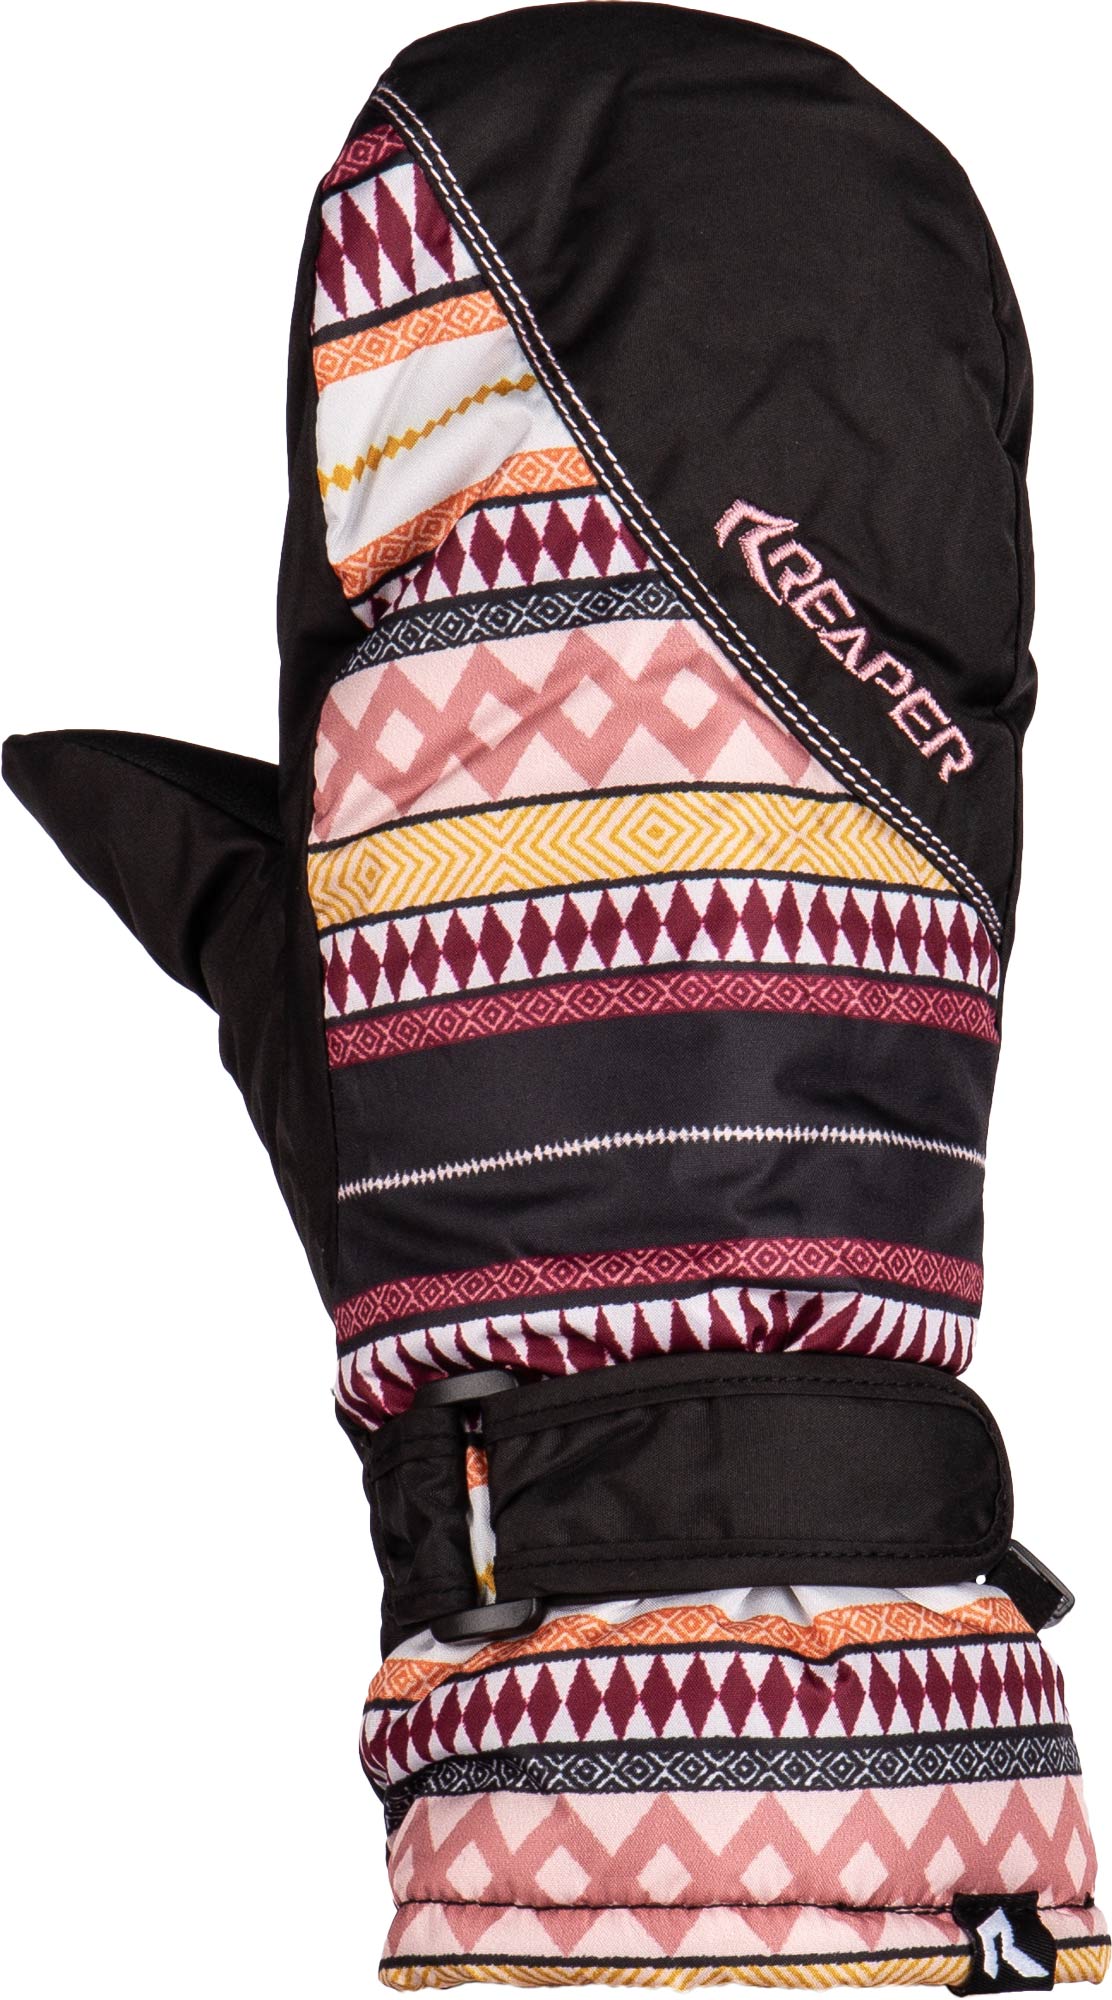 Дамски ръкавици за ски/сноуборд